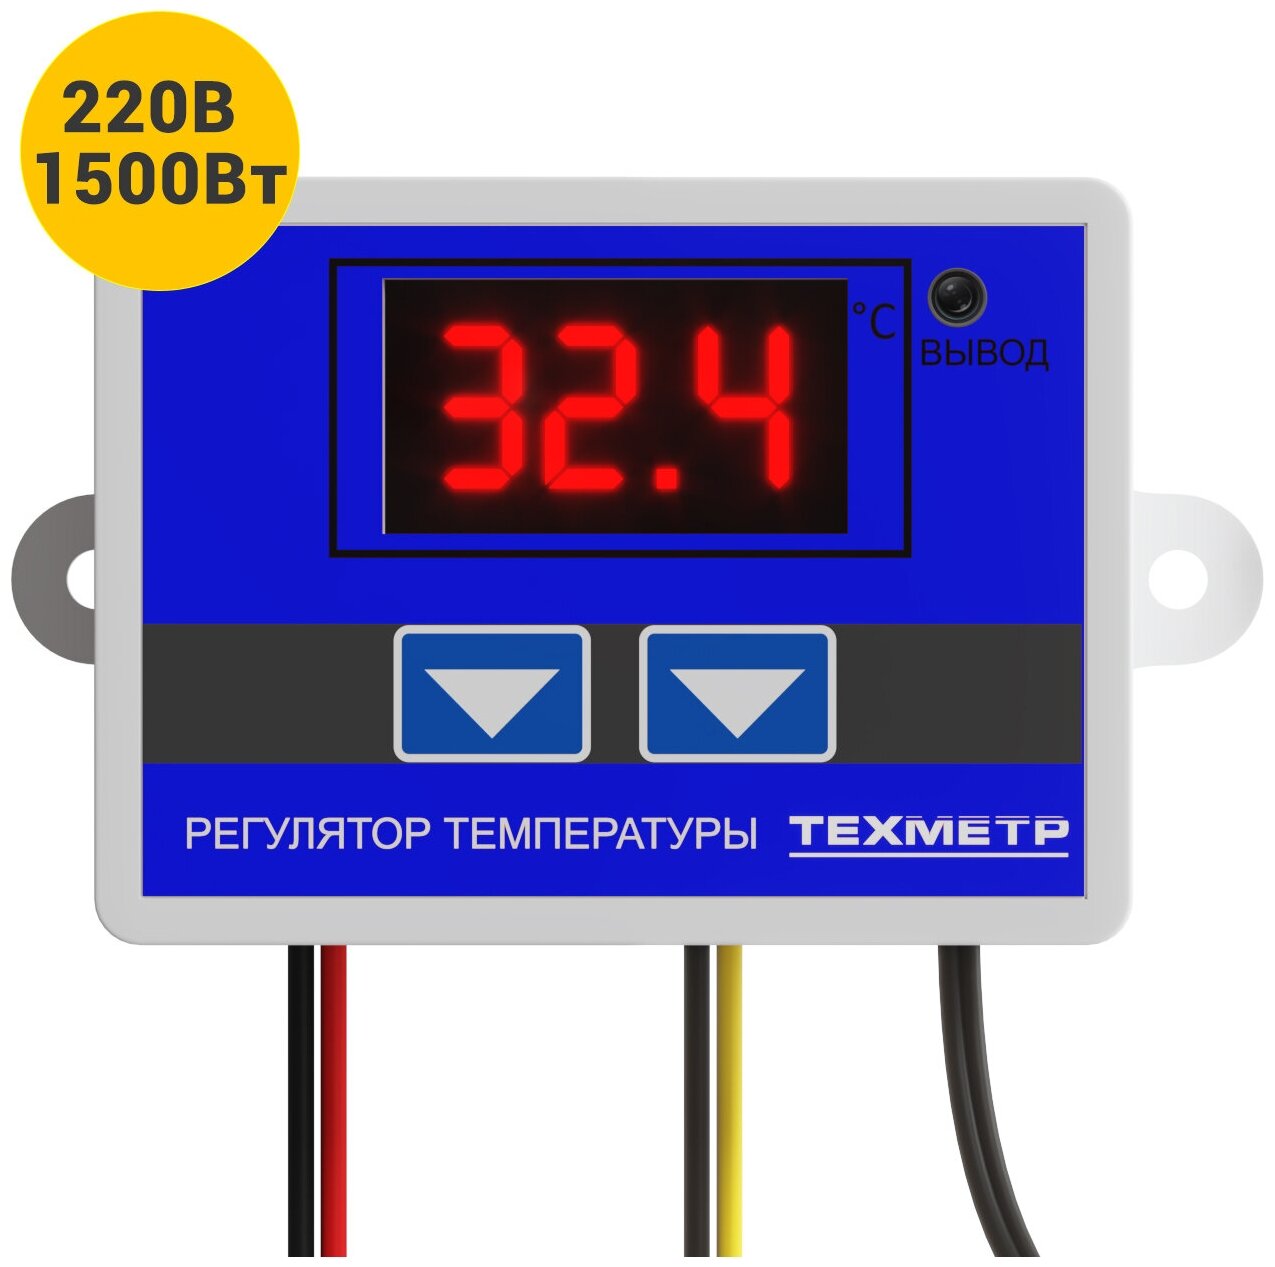 Терморегулятор термостат контроллер температуры с соединительными клеммами (4 штуки) техметр XH-W3001 110-220В 1500Вт -50+110С TRW3001 (Синий) - фотография № 11